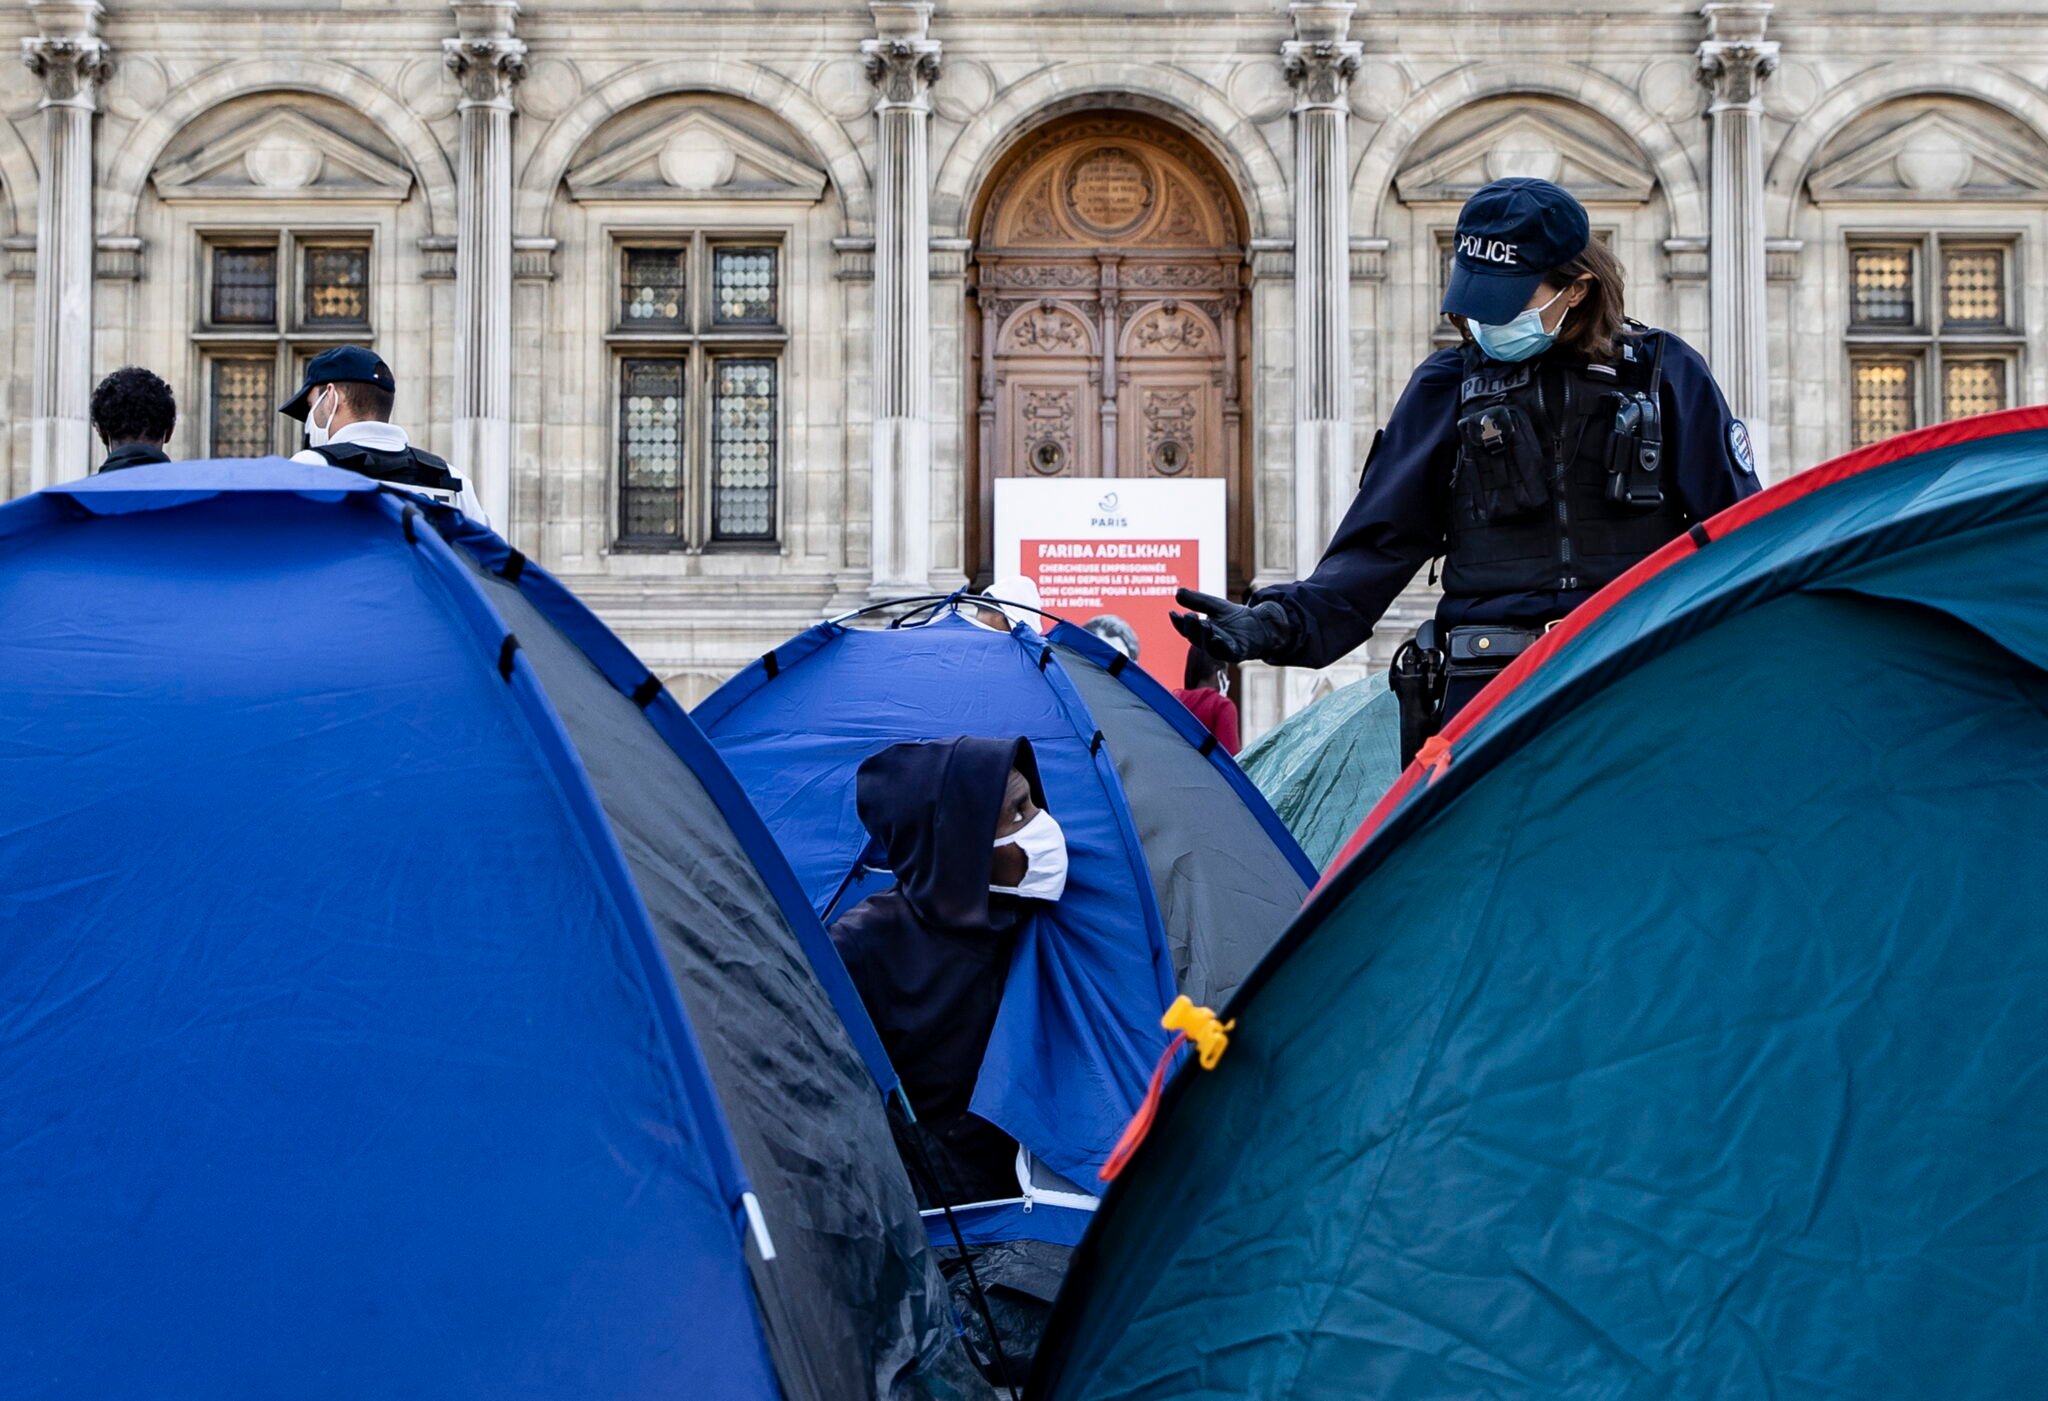 Plac przed paryskim ratuszem. W namiotach mieszka tam ponad 100 rodzin z dziećmi eksmitowanych ze swoich mieszkań. W ten sposób protestują, domagają się pomocy od miasta, fot.  EPA / IAN LANGSDON